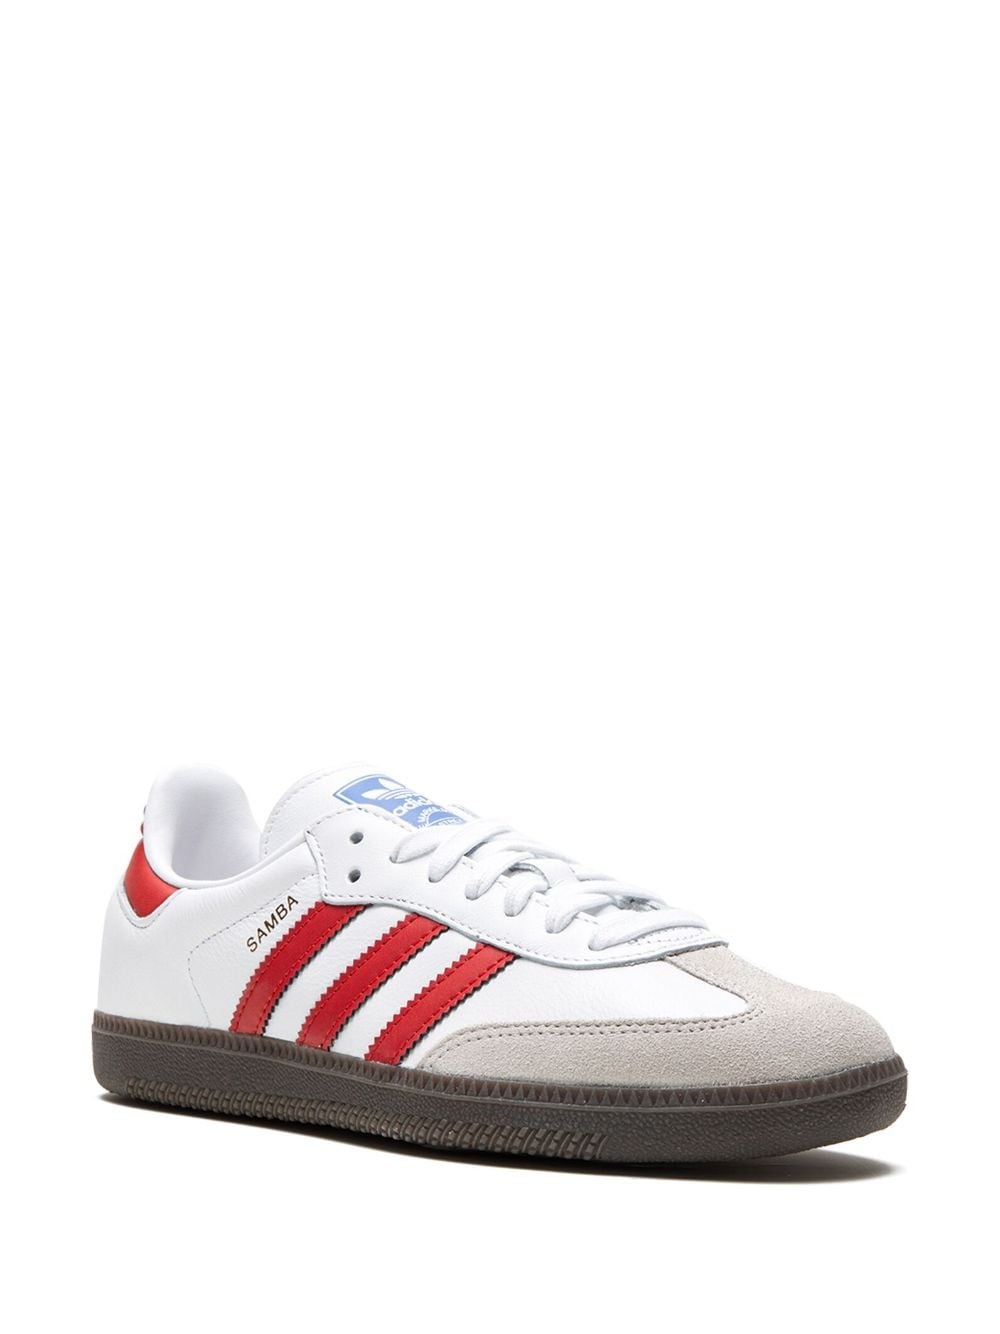 Samba OG "White/Red" sneakers - 2